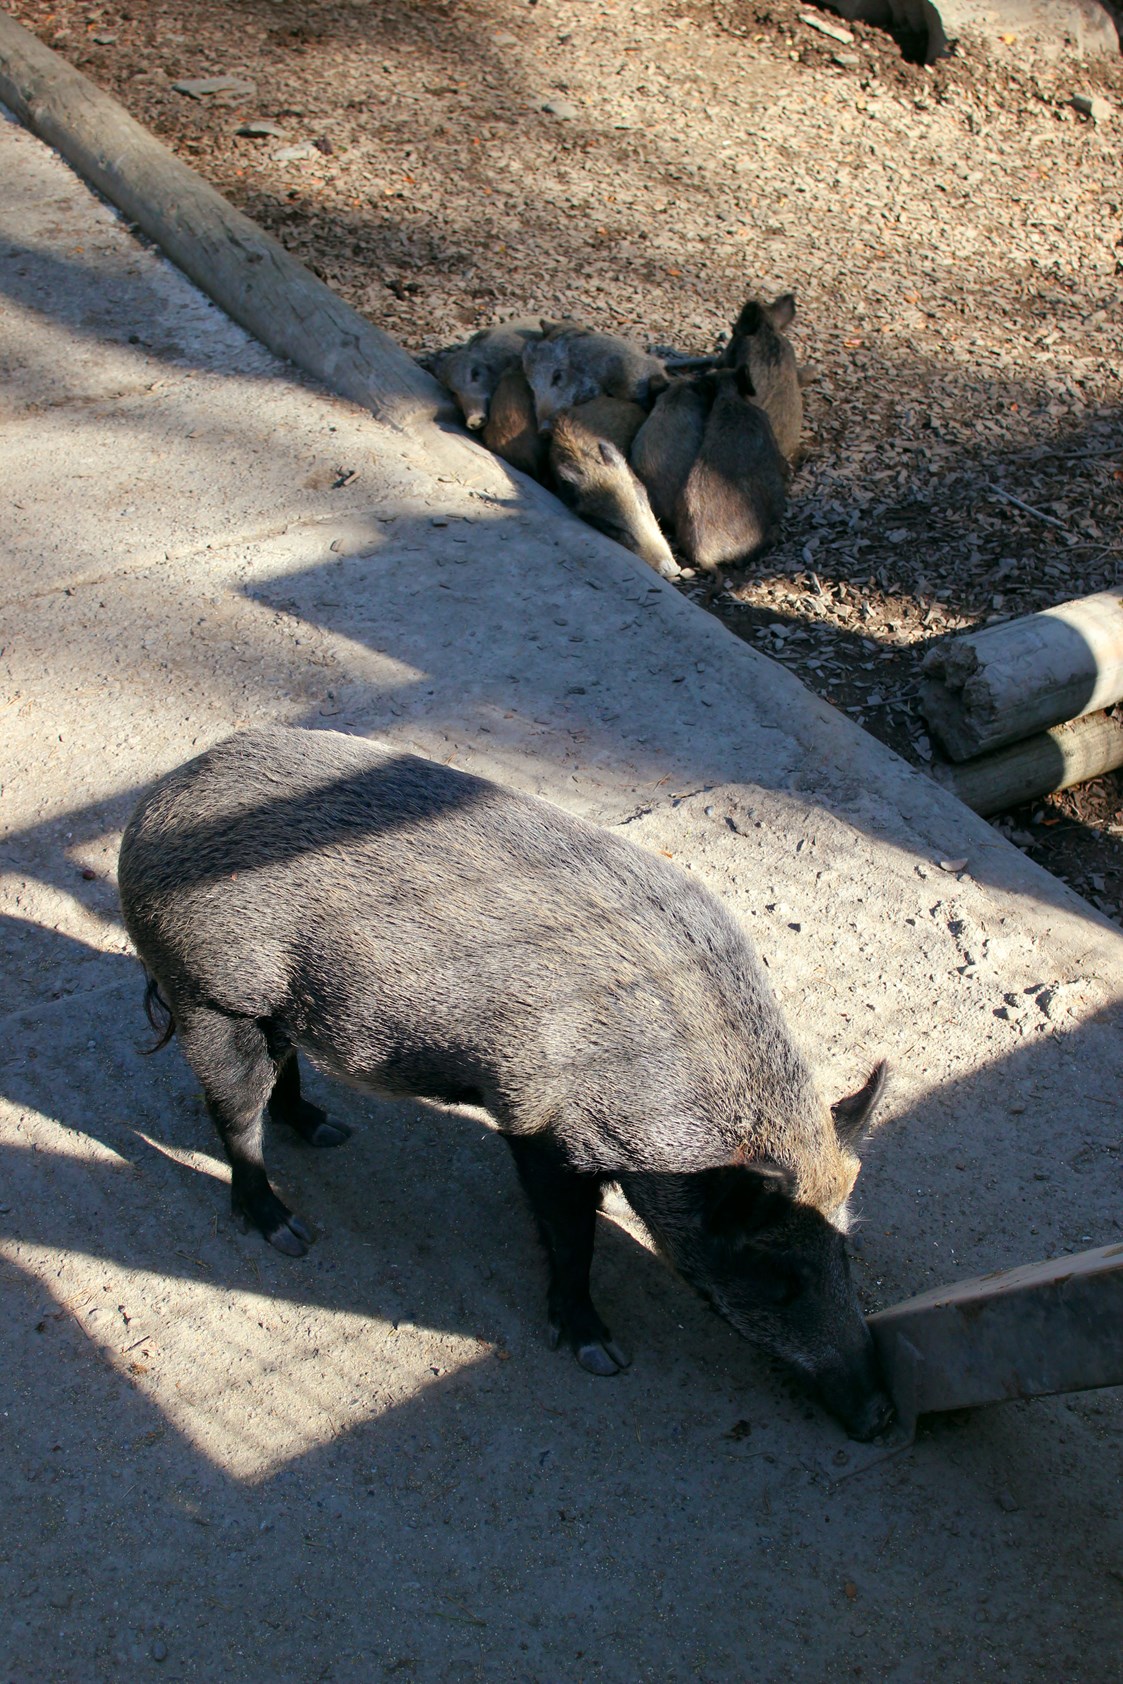 Ausflugsziel: Die Wildschweine können wie viele andere Tiere auch gefüttert werden - Wildpark Feldkirch